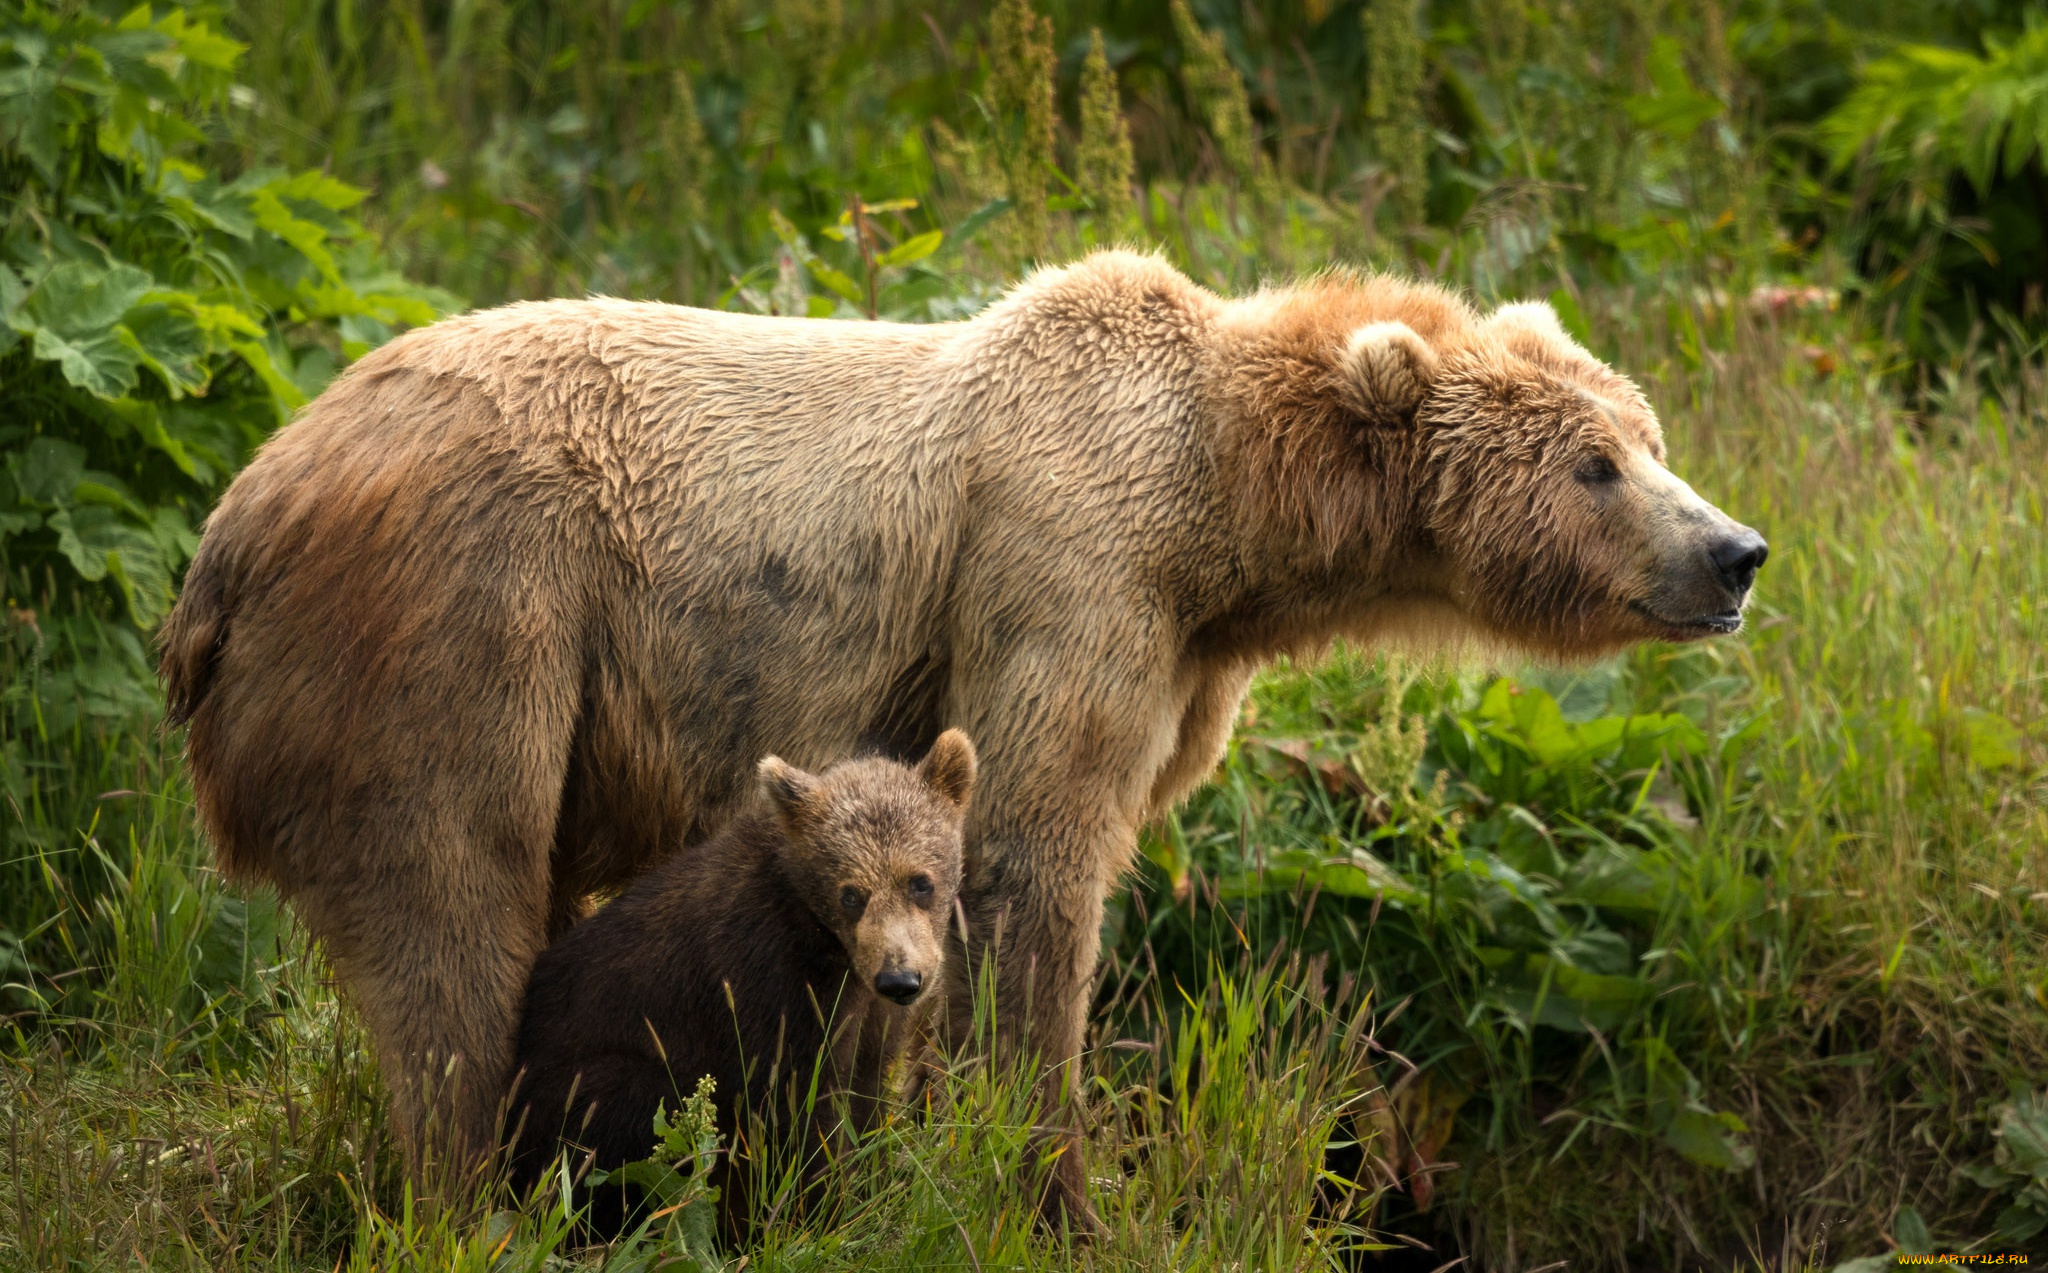 животные, медведи, морды, два, парочка, медведица, дитя, материнство, мать, медведя, бурые, зелень, медвежонок, пара, поза, природа, листья, медведь, малыш, лето, взгляд, трава